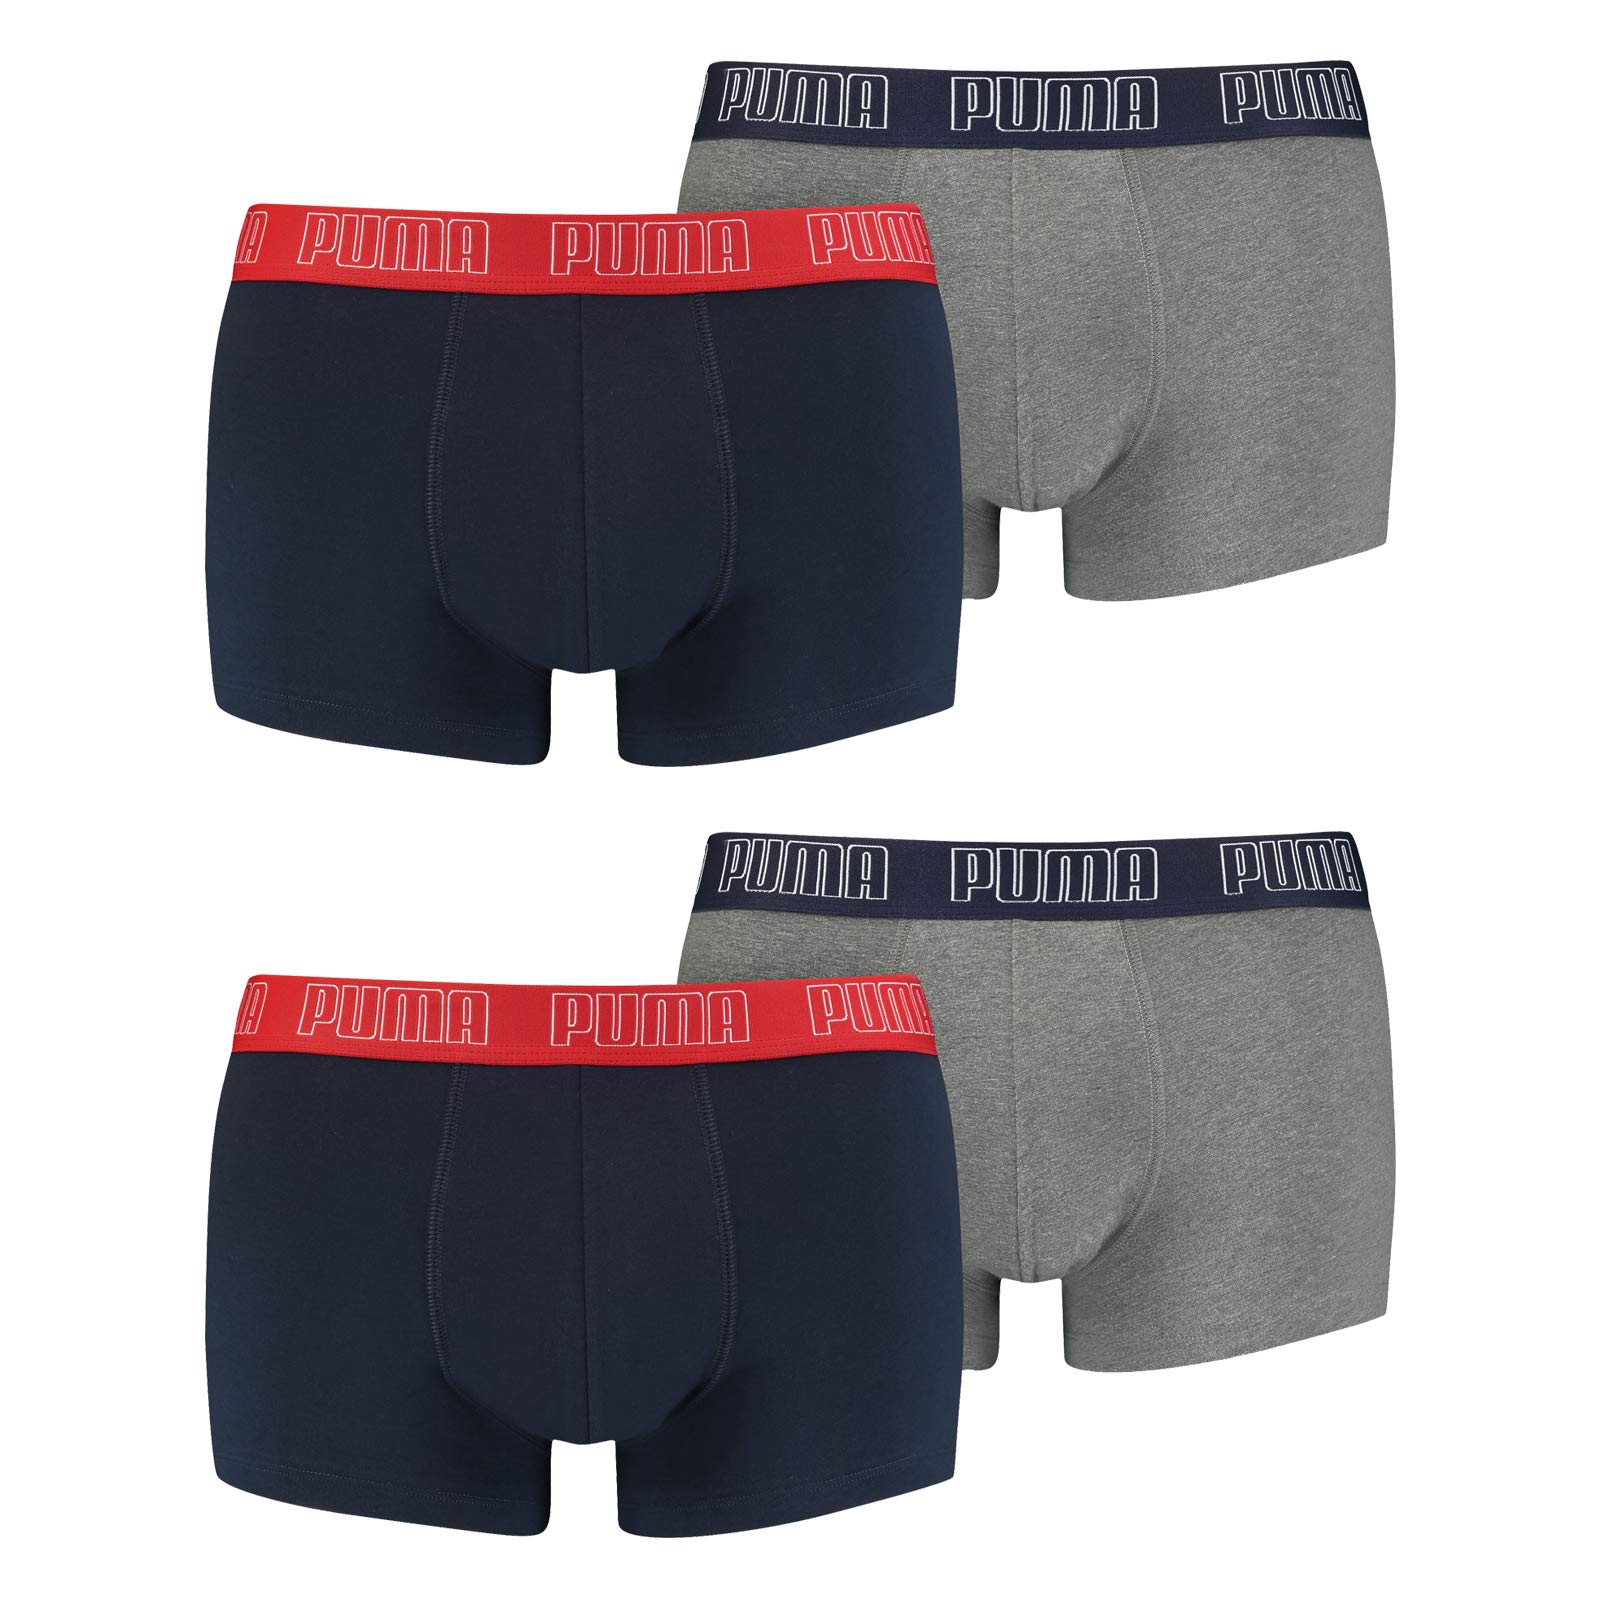 PUMA Herren Shortboxer Unterhosen Trunks 4er Pack, Wäschegröße:L, Artikel:-006 Blue/Grey Melange